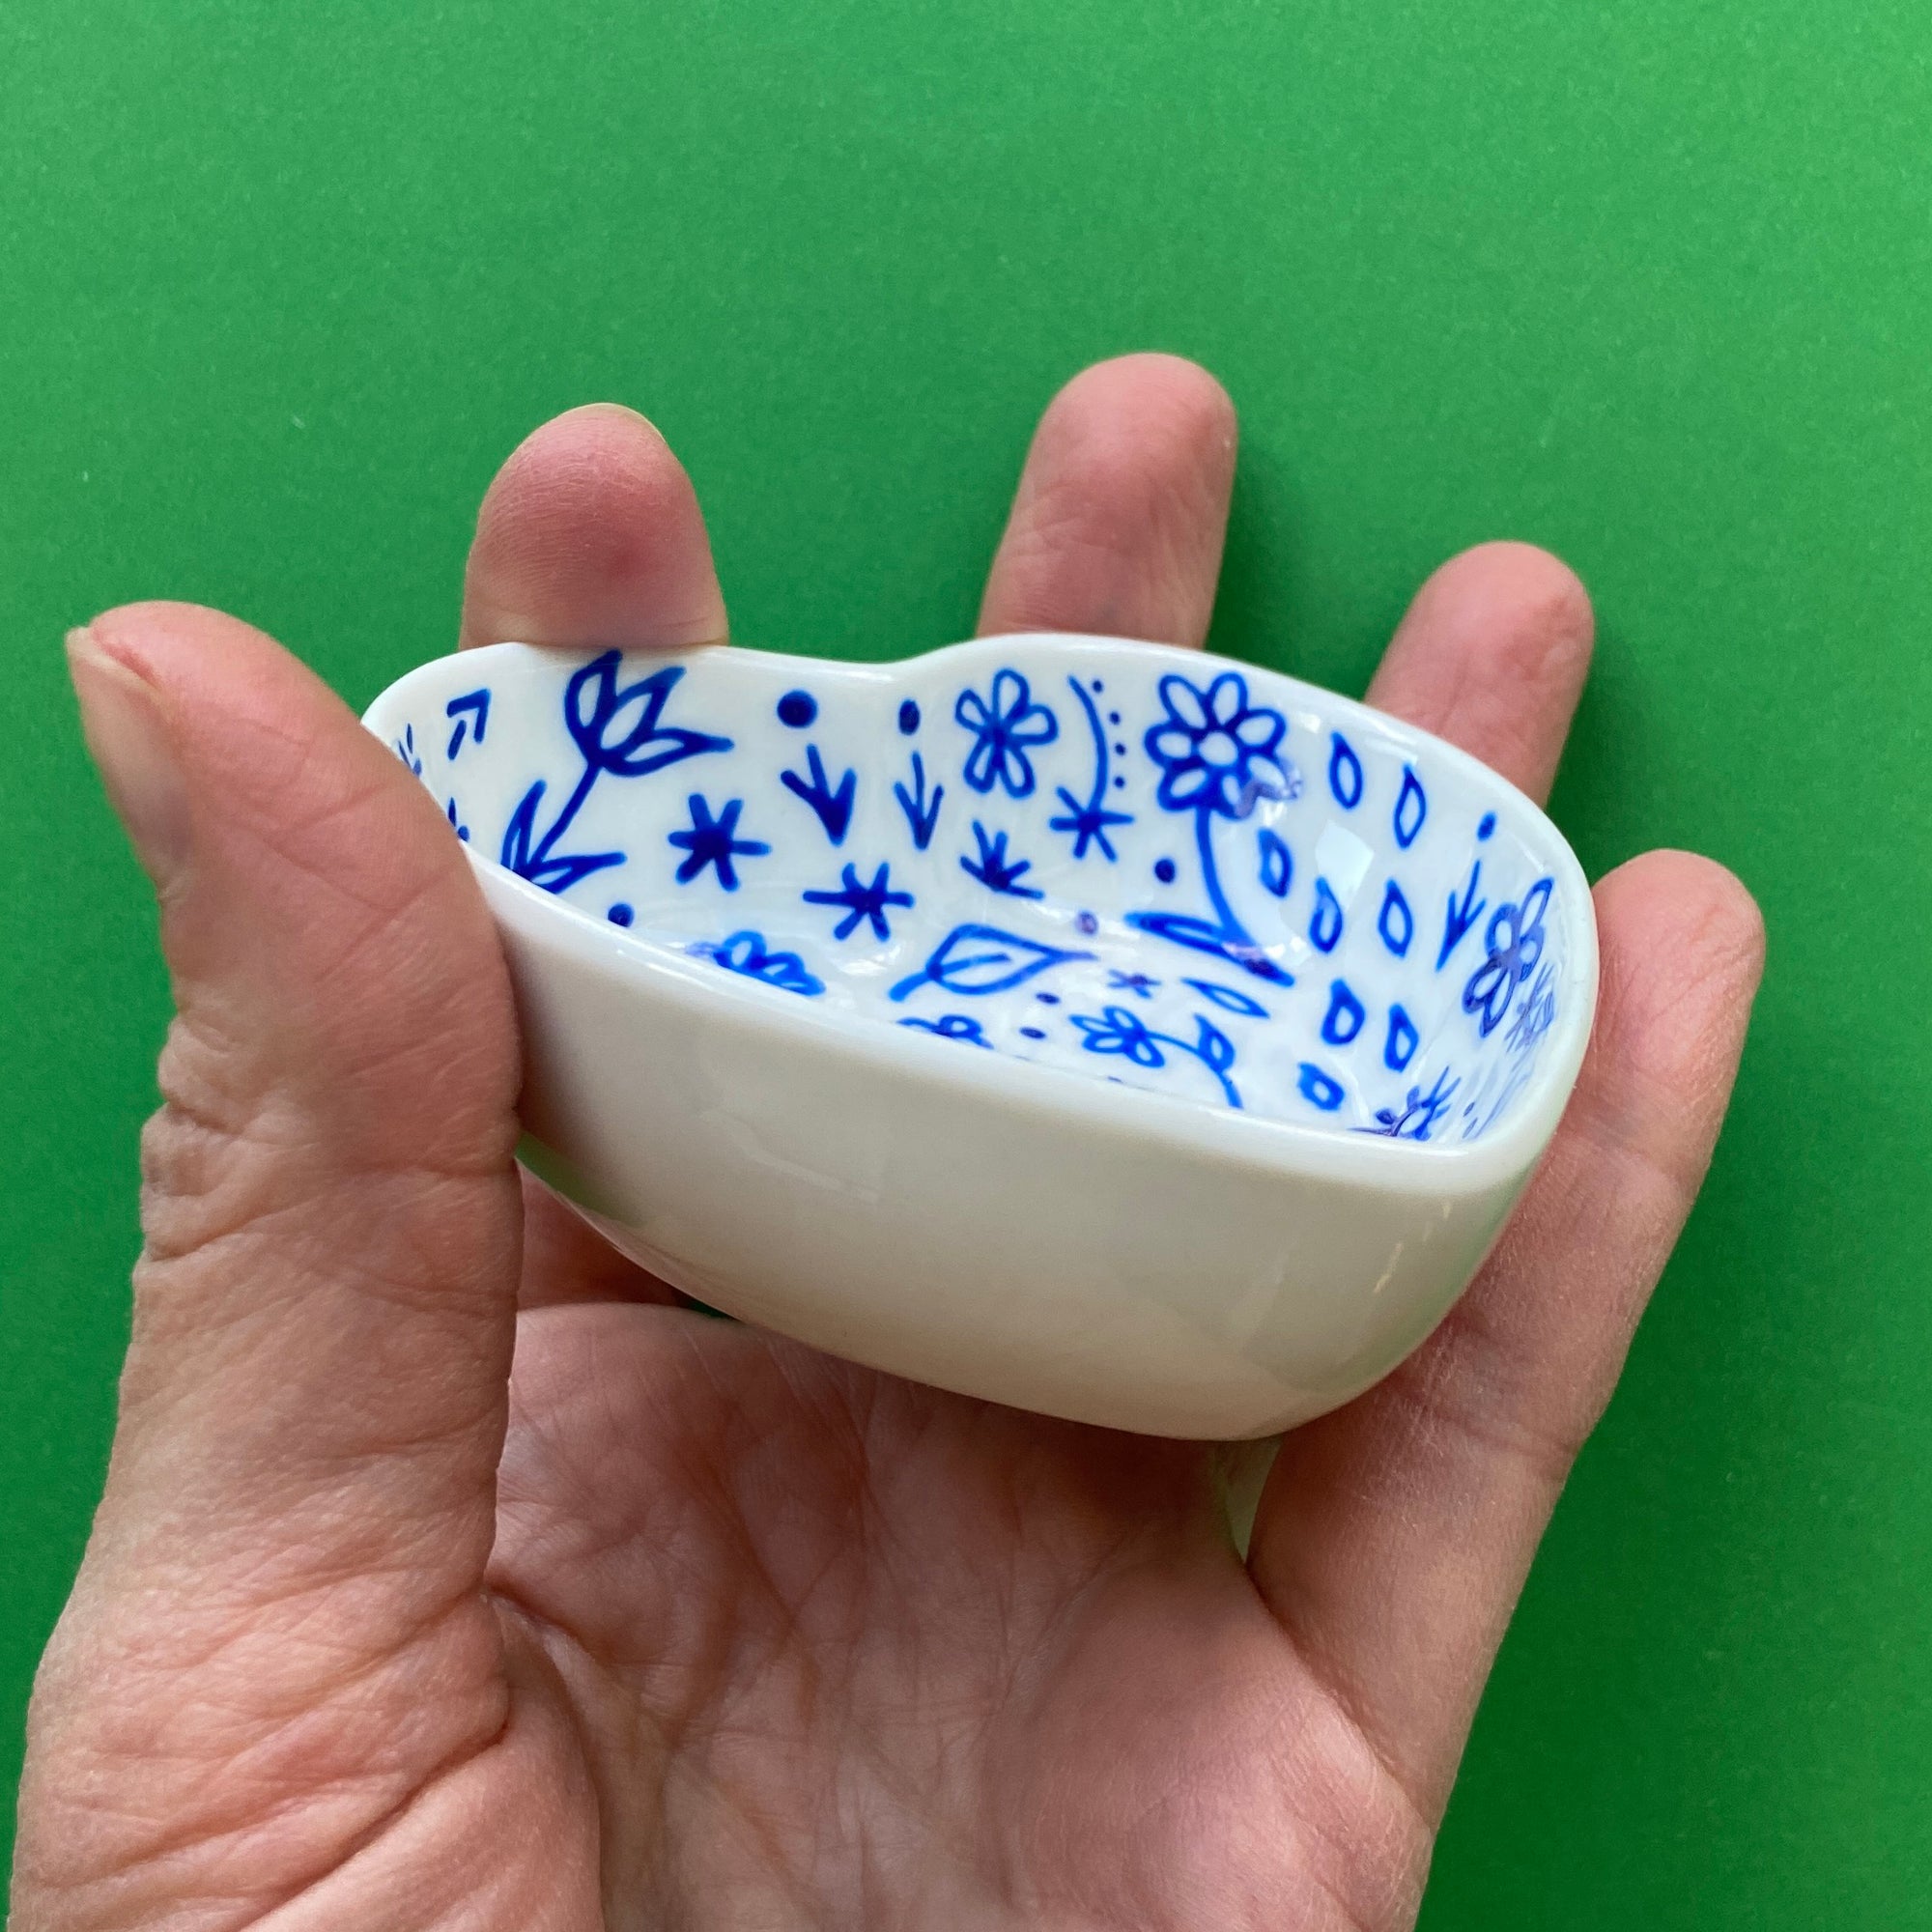 Blue Floral 2 - Hand Painted Porcelain Heart Bowl